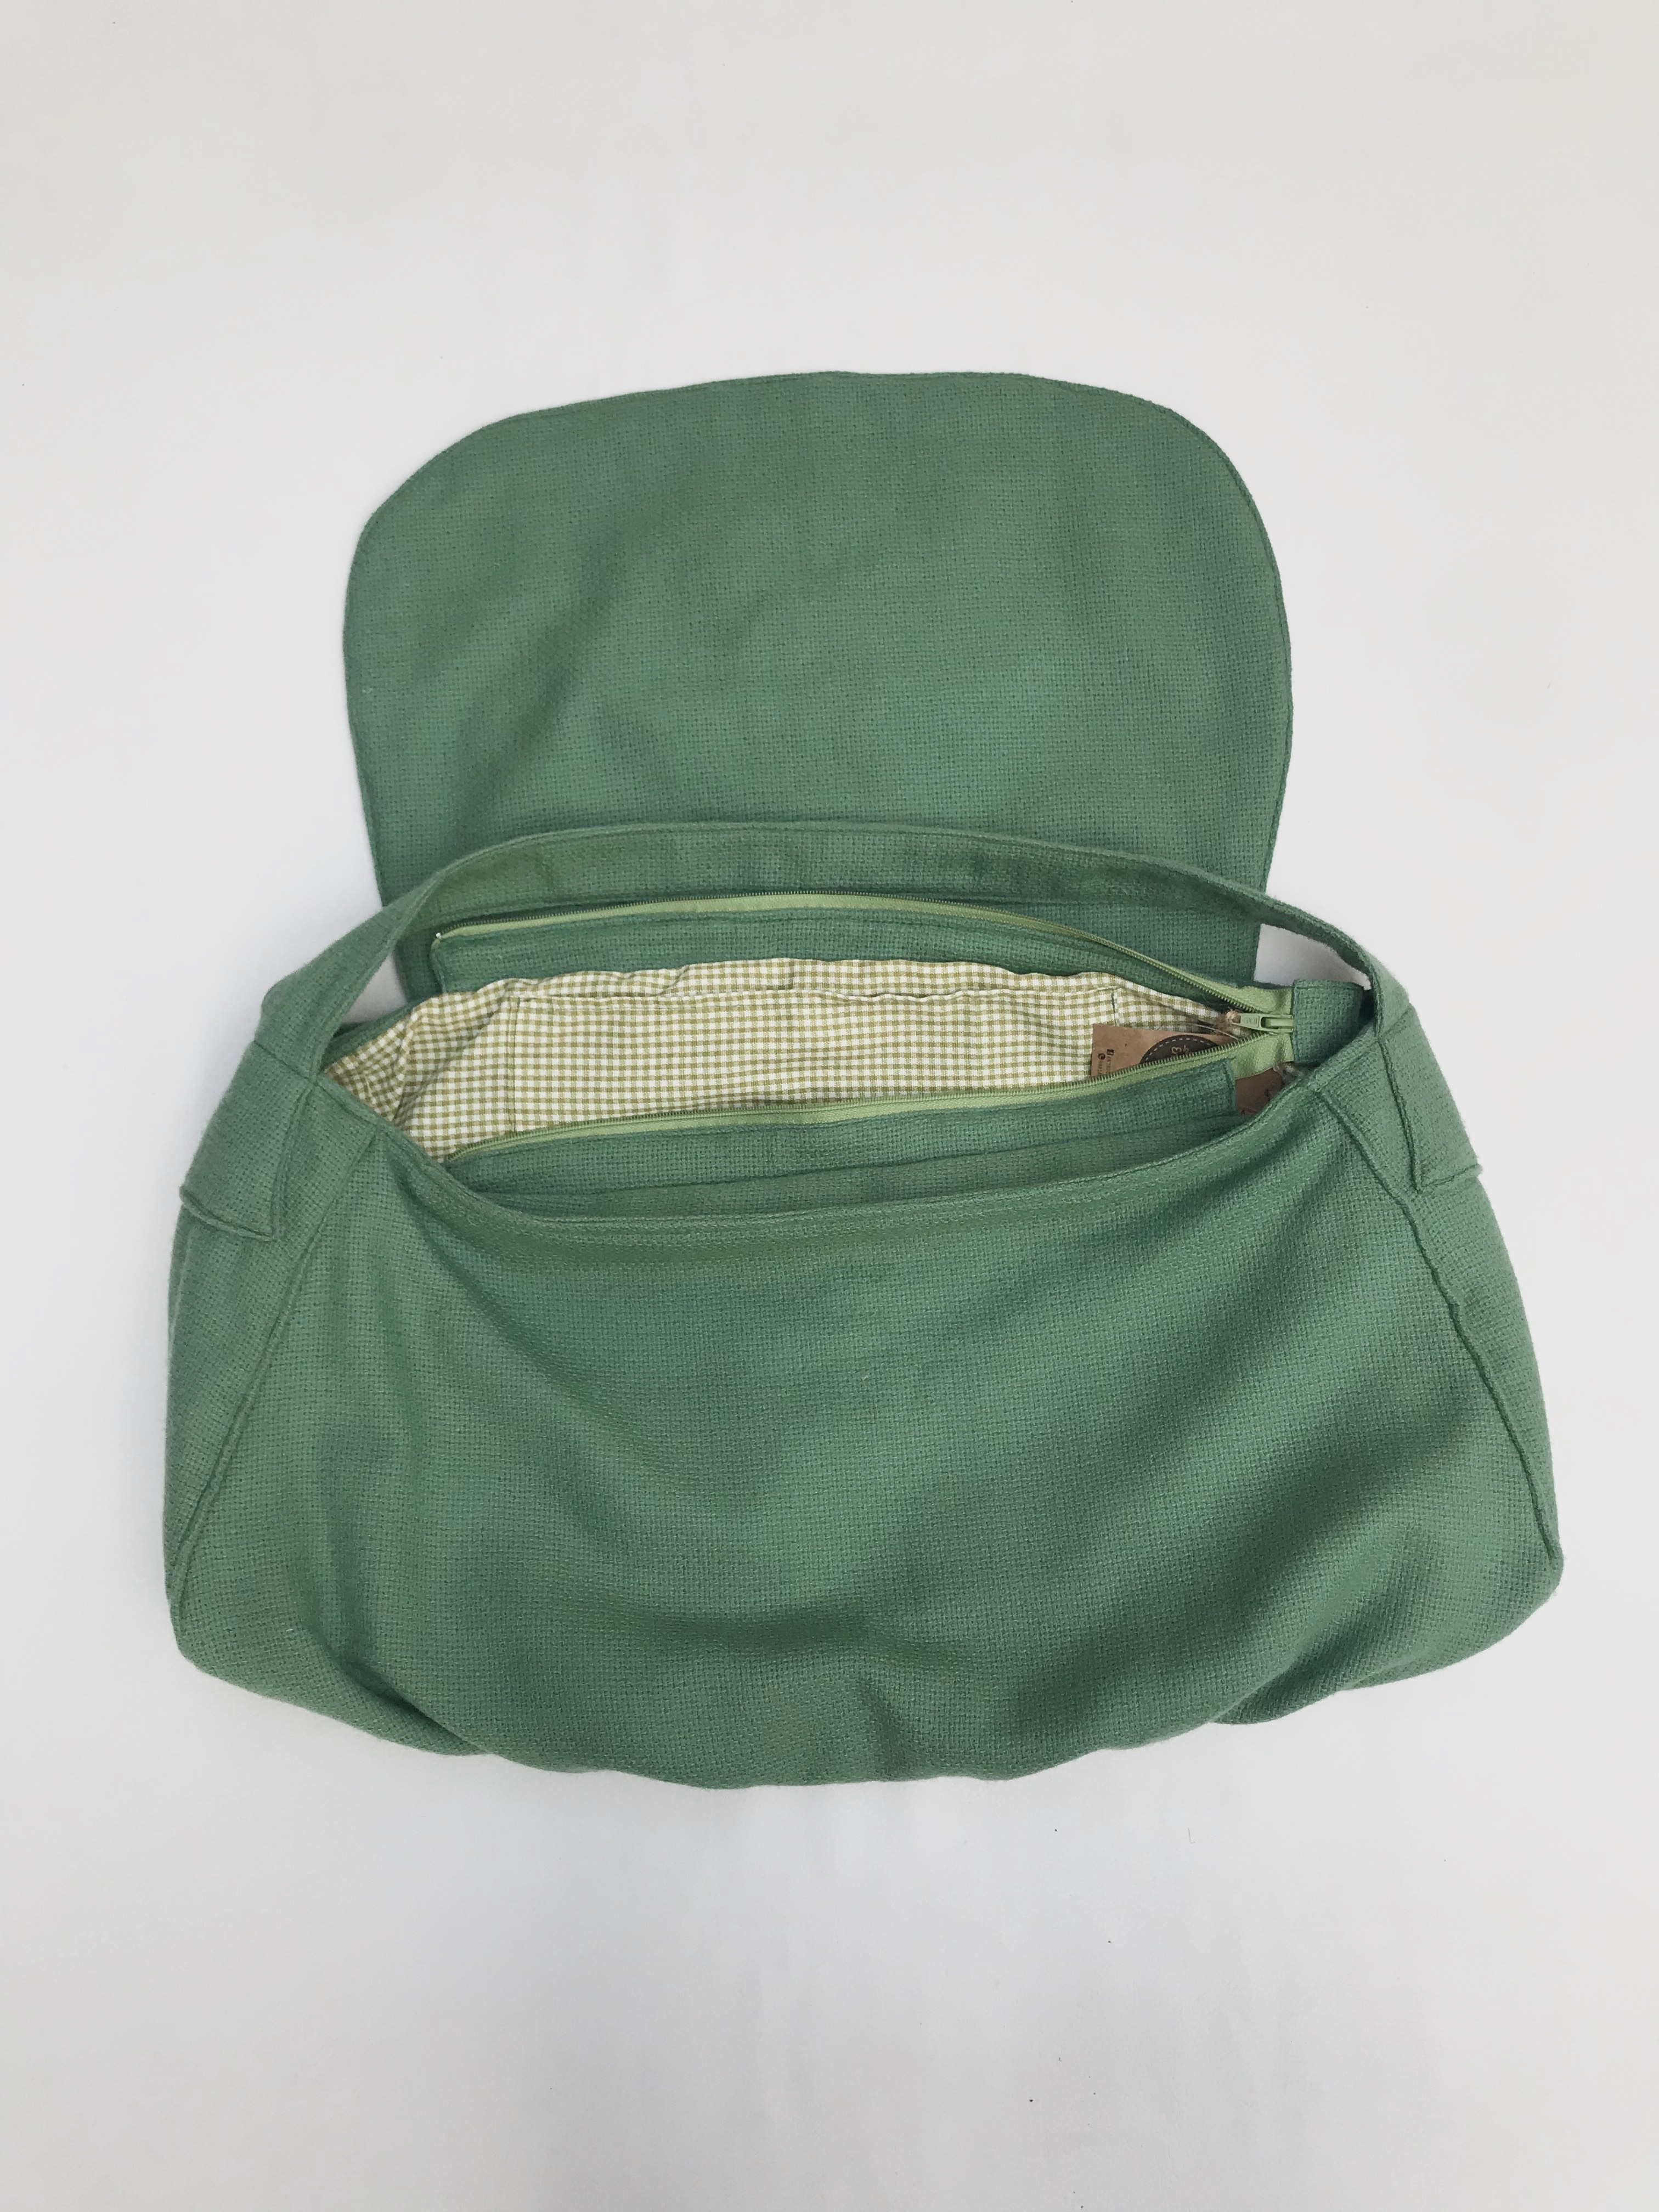 Cartera bolso verde tipo tejido con bordado de flor en la tapa, lleva forro y cierre. Alto 24cm Largo 52cm Ancho 13cm cartera bolso. Nuevo con etiqueta